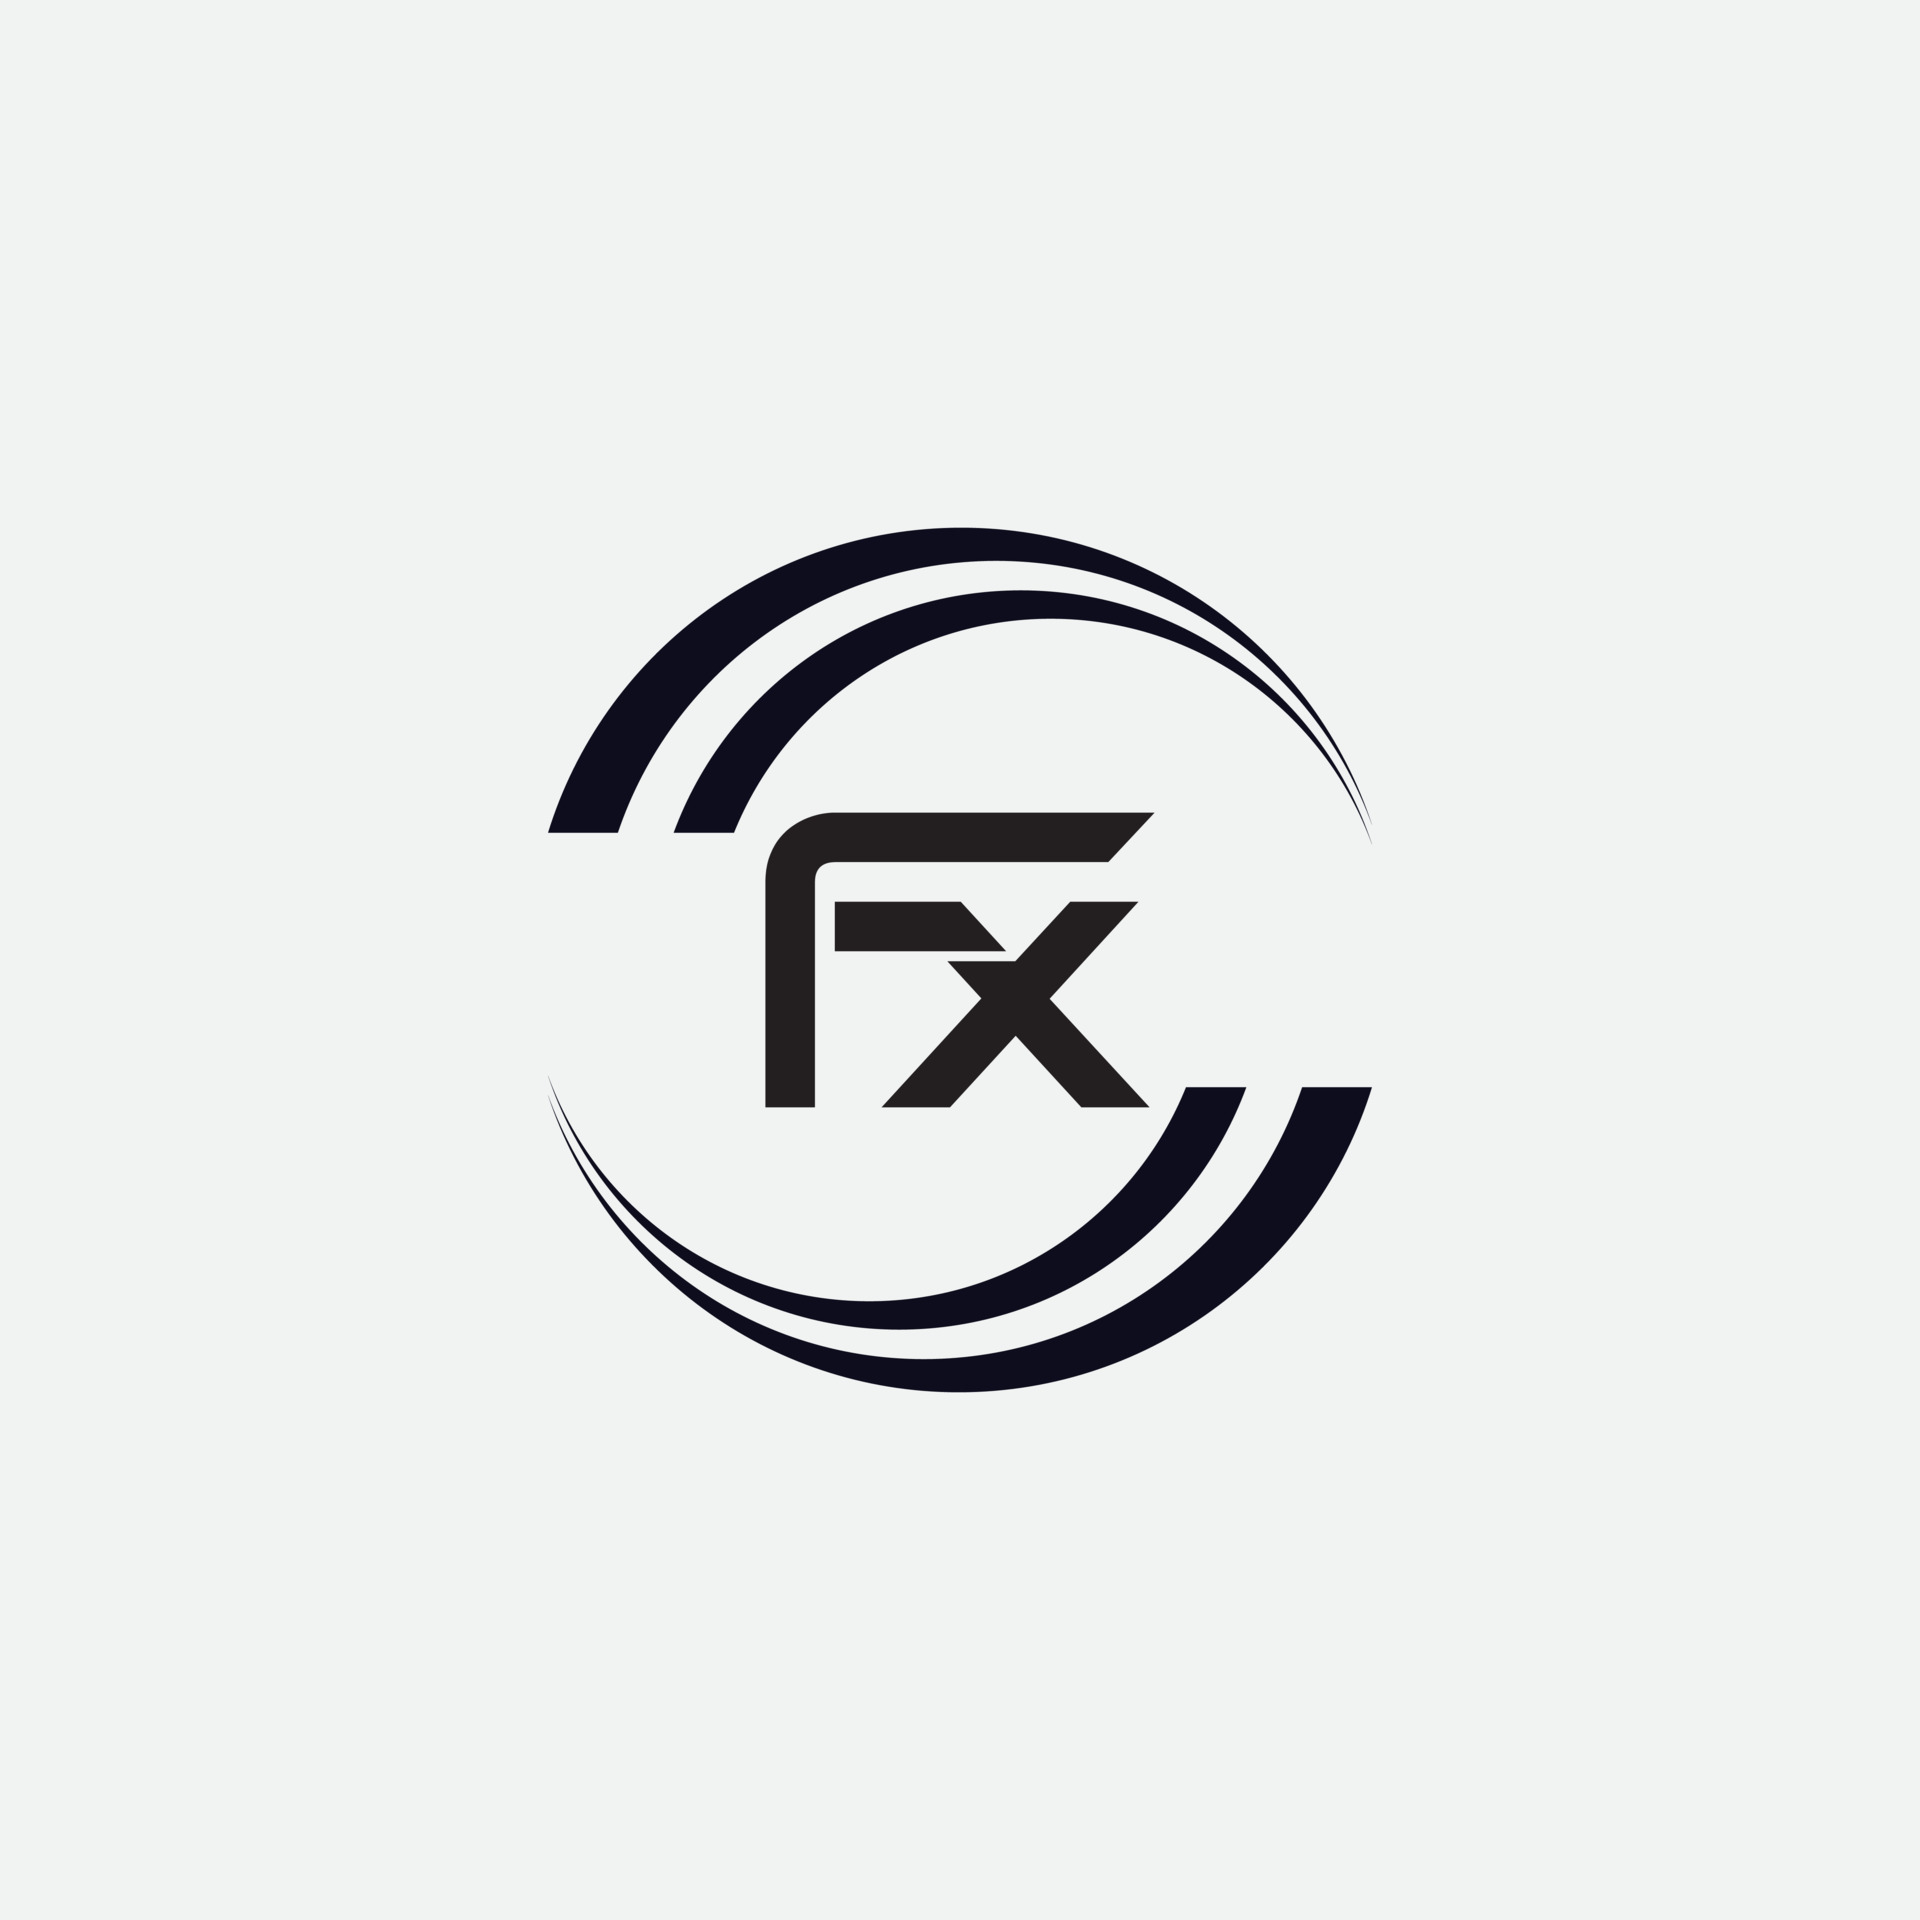 FX letter logo design 6444211 Vector Art at Vecteezy